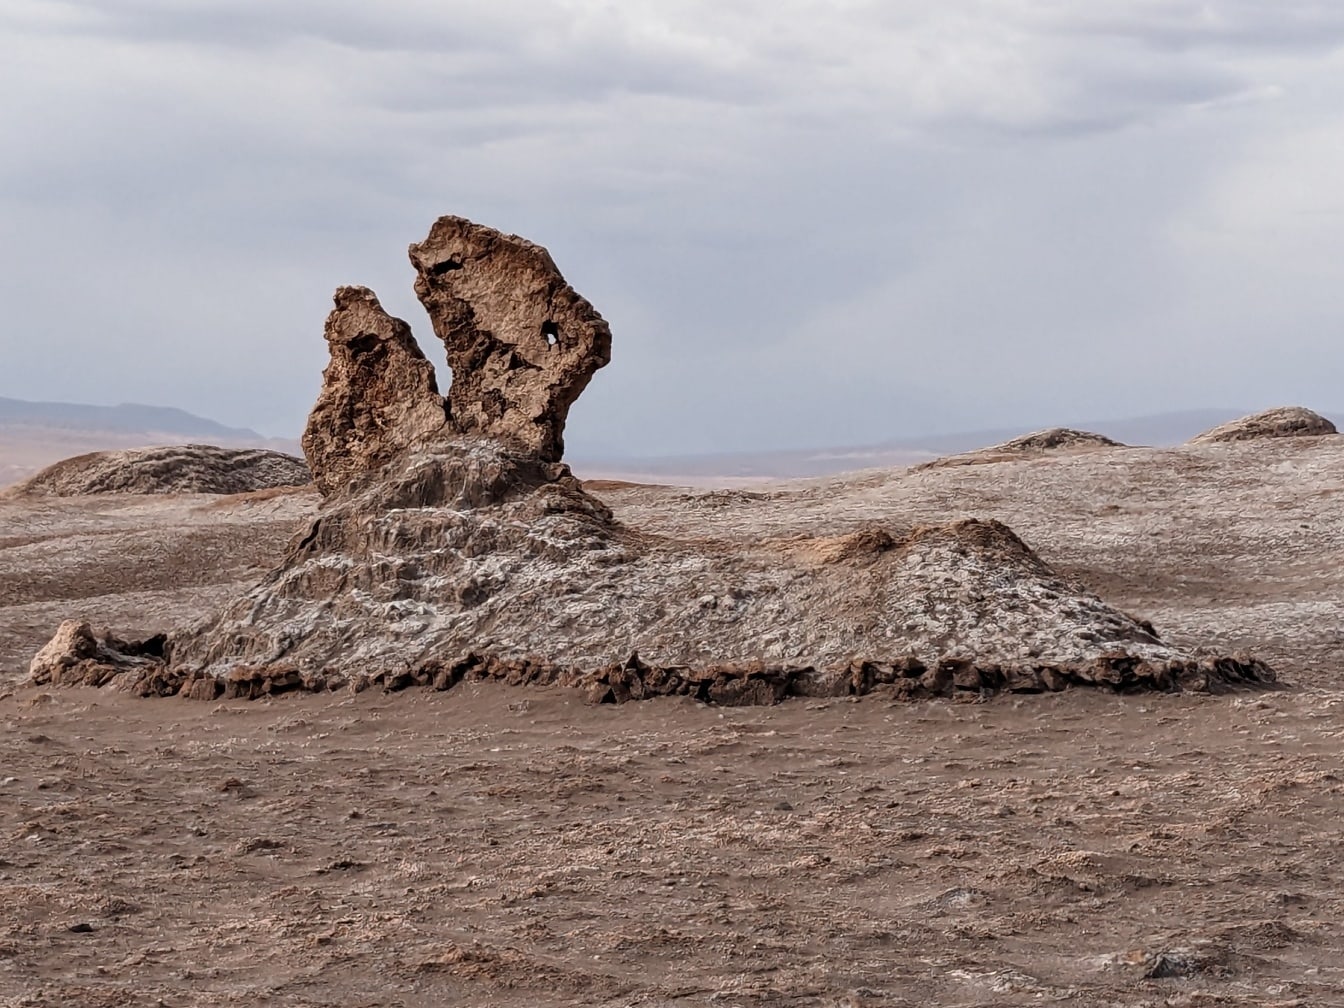 A dinoszauruszfejként ismert sziklaképződmény a chilei Atacama-ban, a világ legszárazabb sivatagában